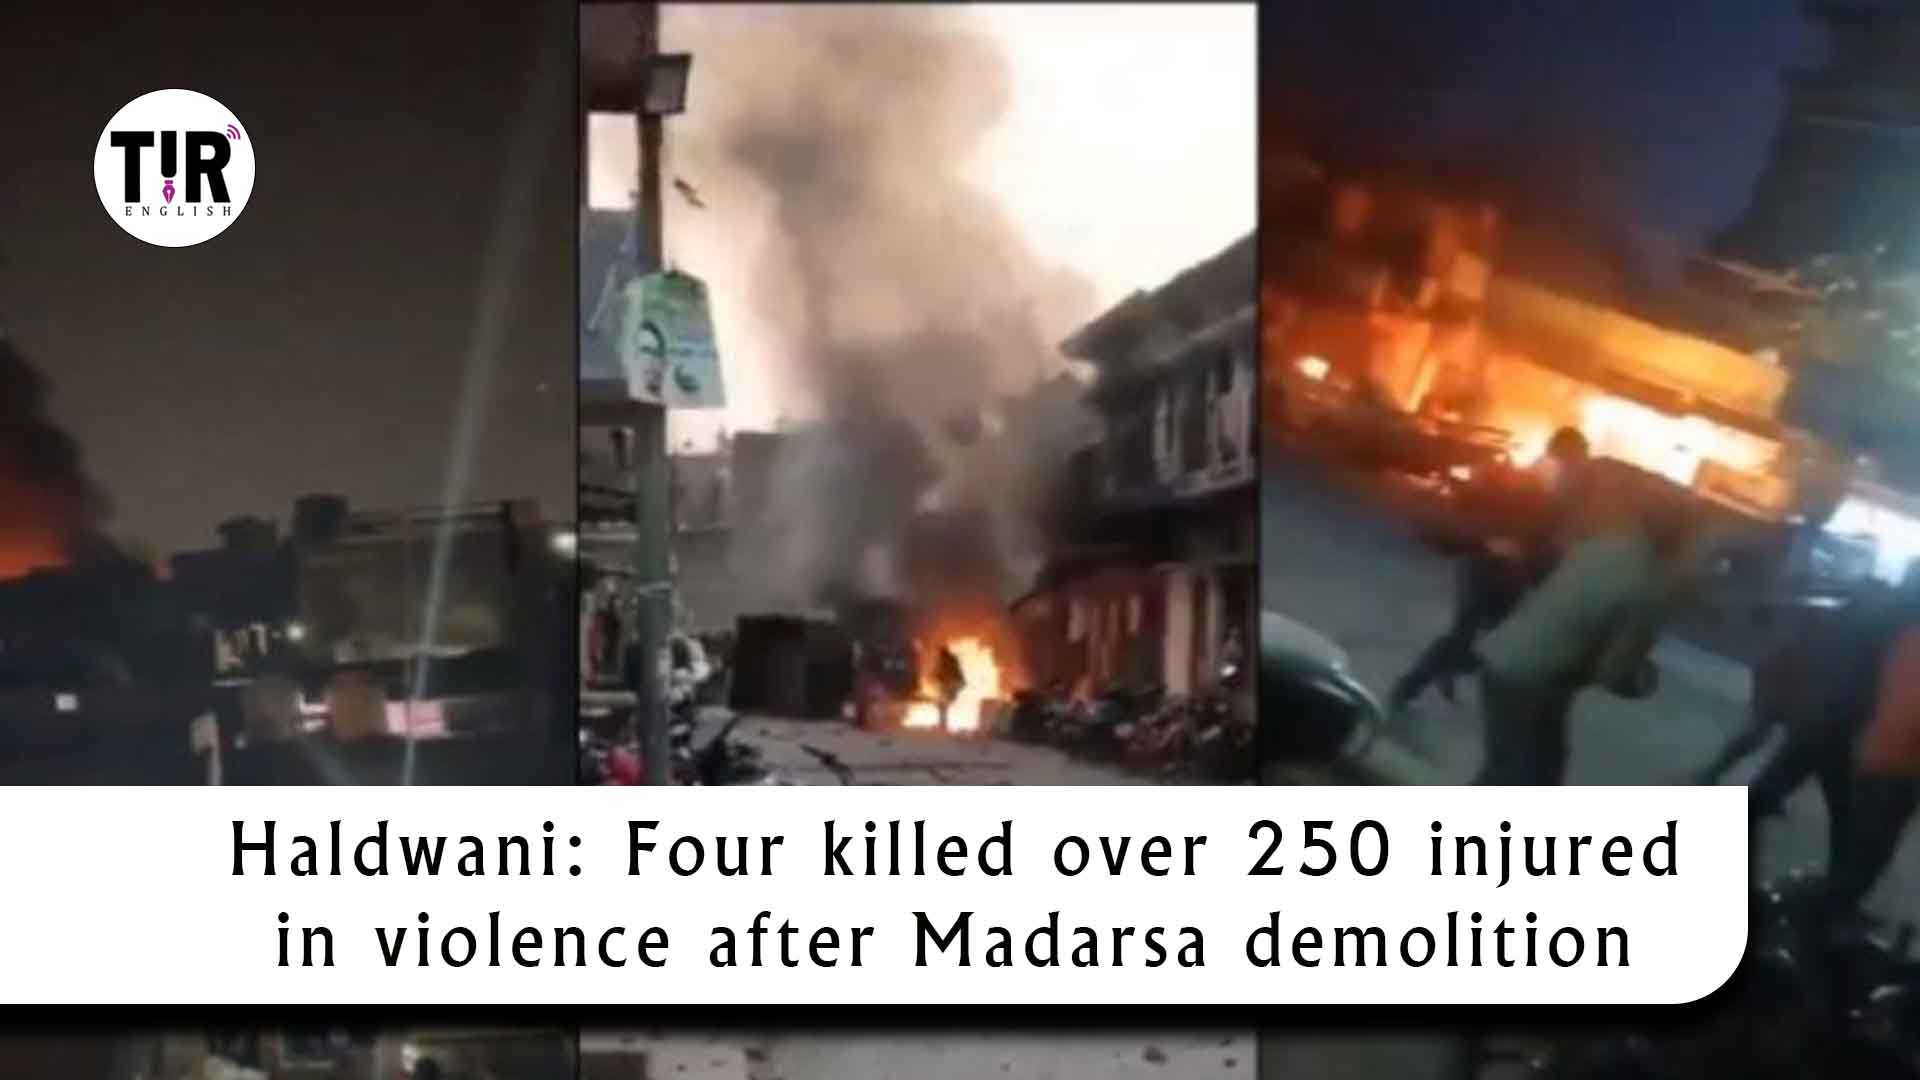 Haldwani: Four killed over 250 injured in violence after Madarsa demolition